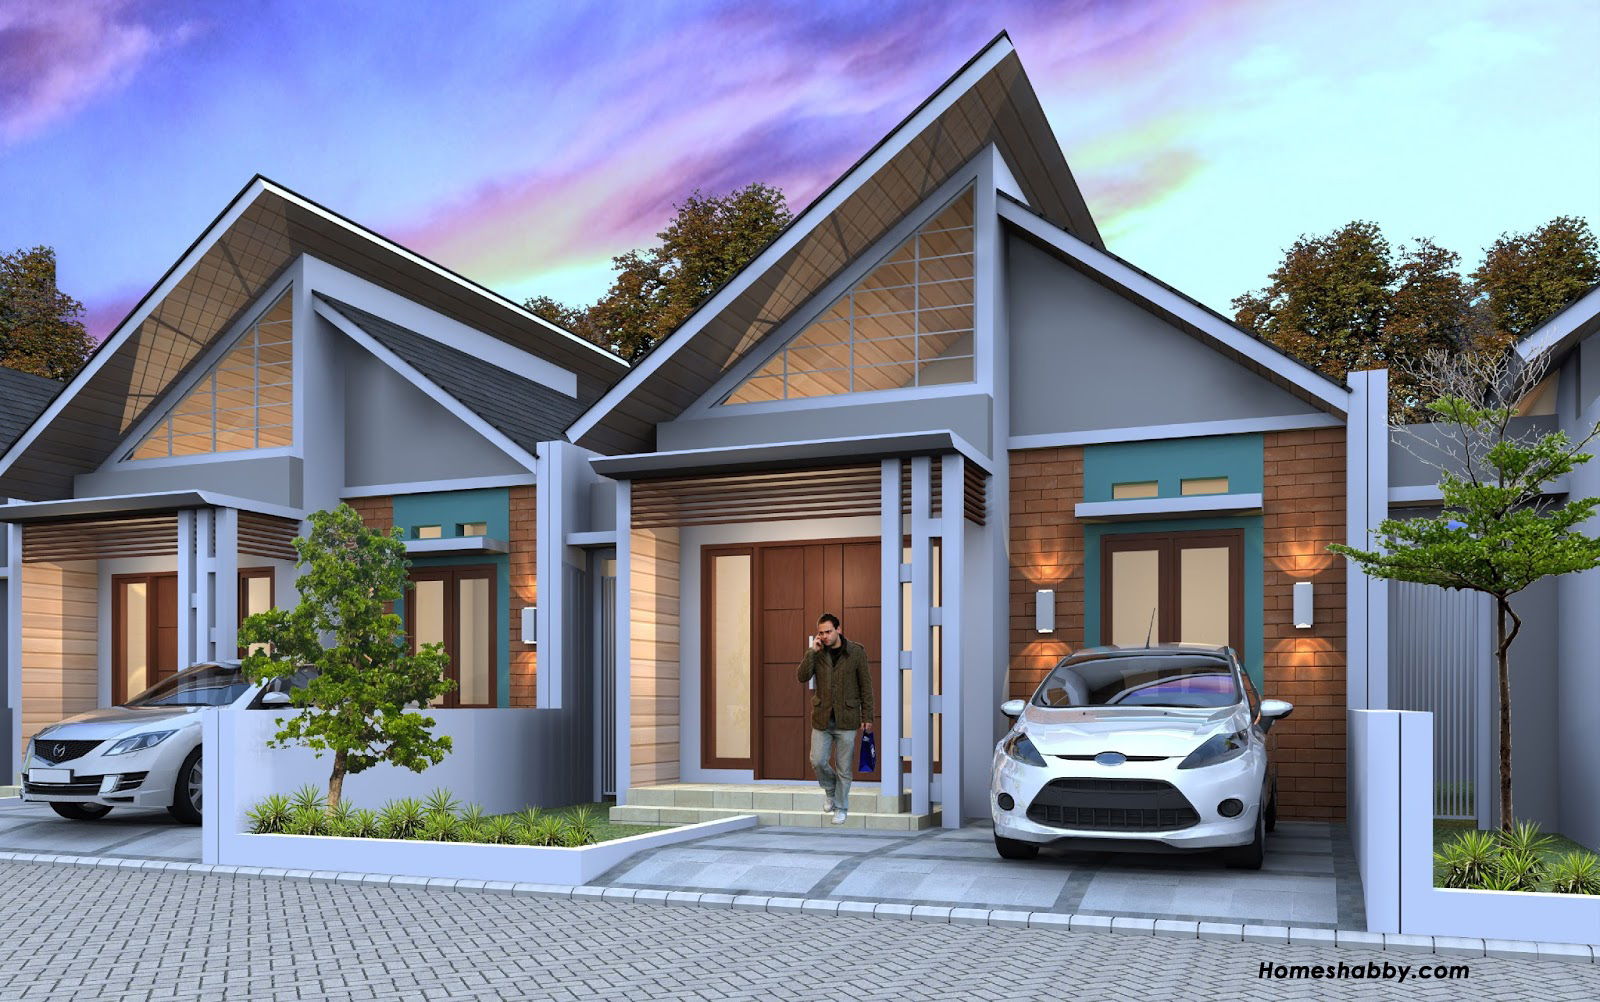 Desain Dan Denah Rumah Minimalis Konsep Hemat Energi Ukuran 6 X 10 M Cocok Untuk Di Perkotaan Dan Pedesaan Homeshabbycom Design Home Plans